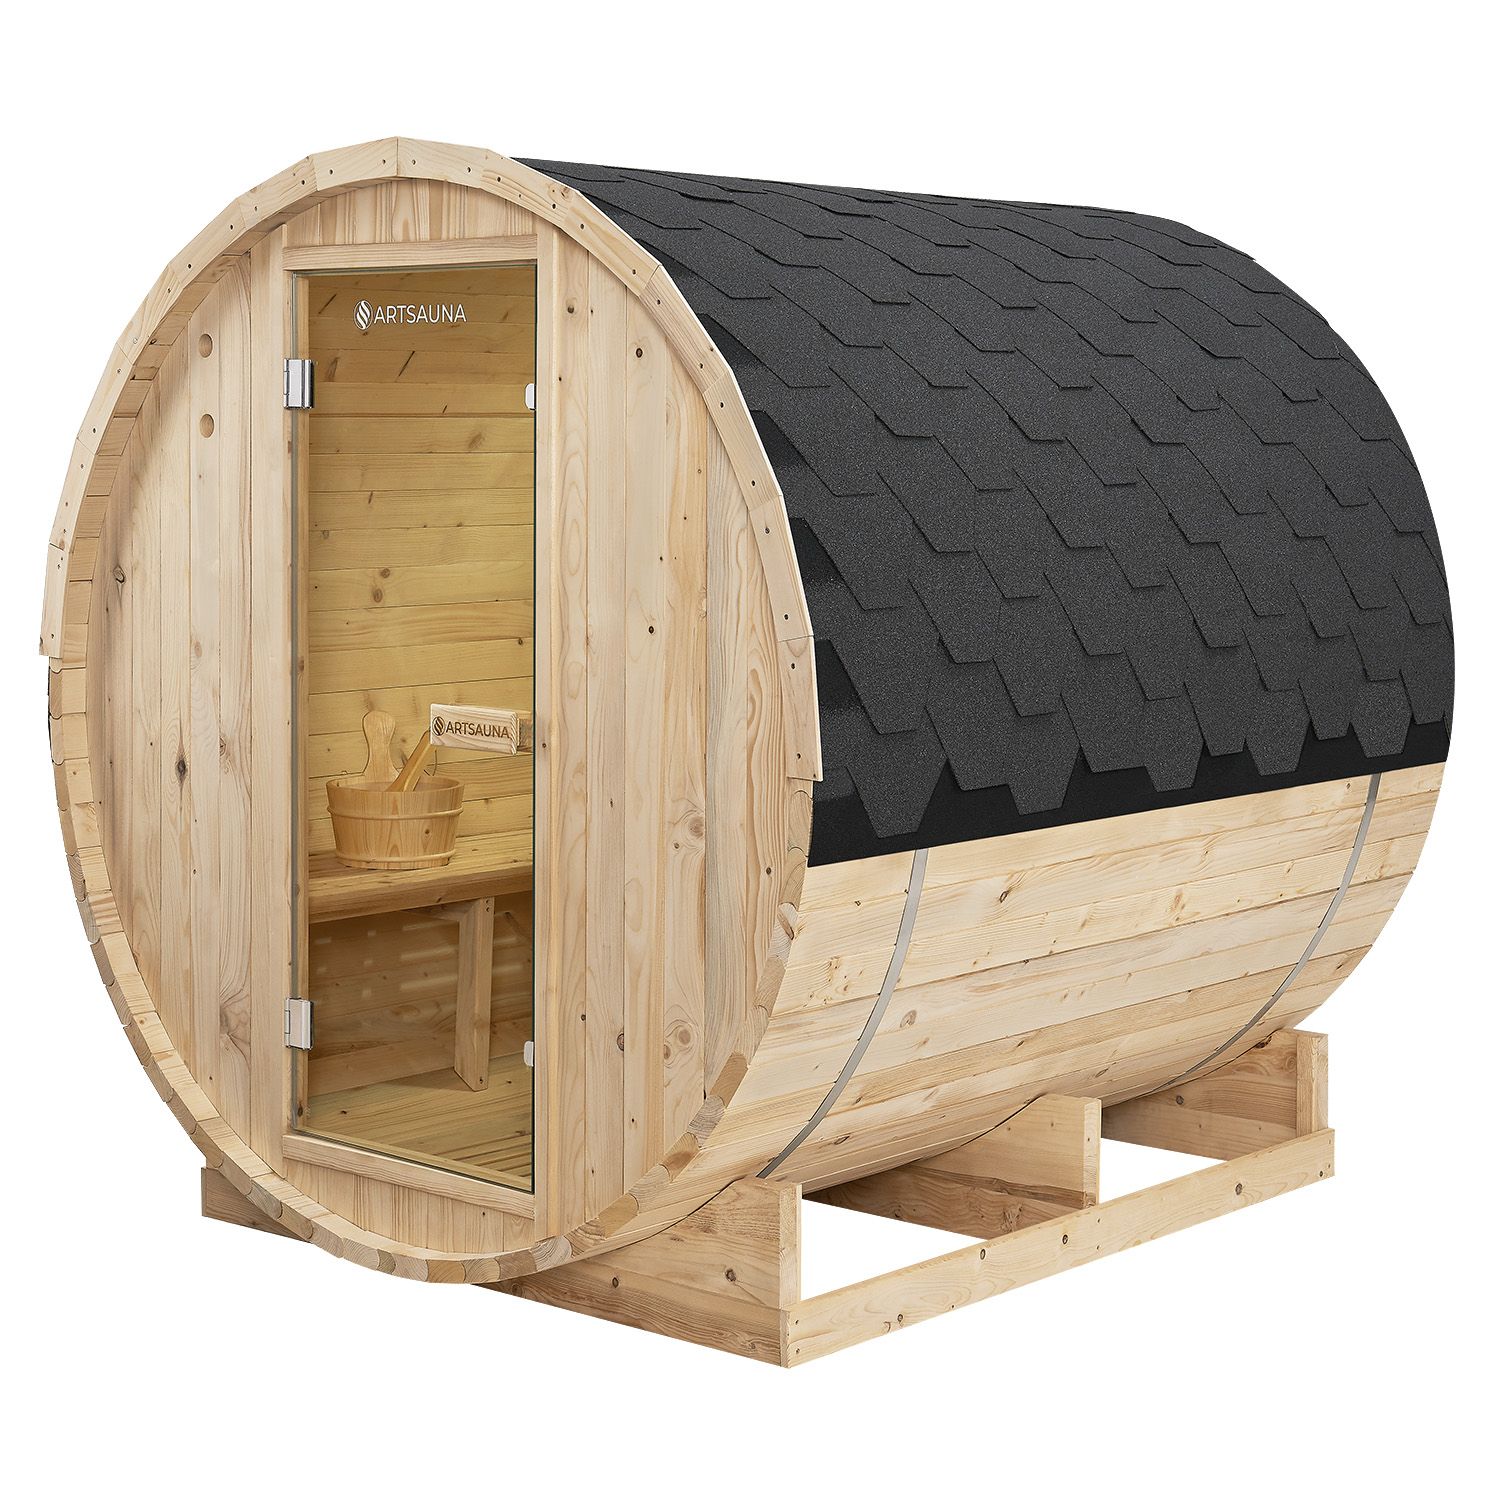 Juskys Venkovní sudová sauna Spitzbergen L délka 180 cm průměr 180 cm (6 kW)